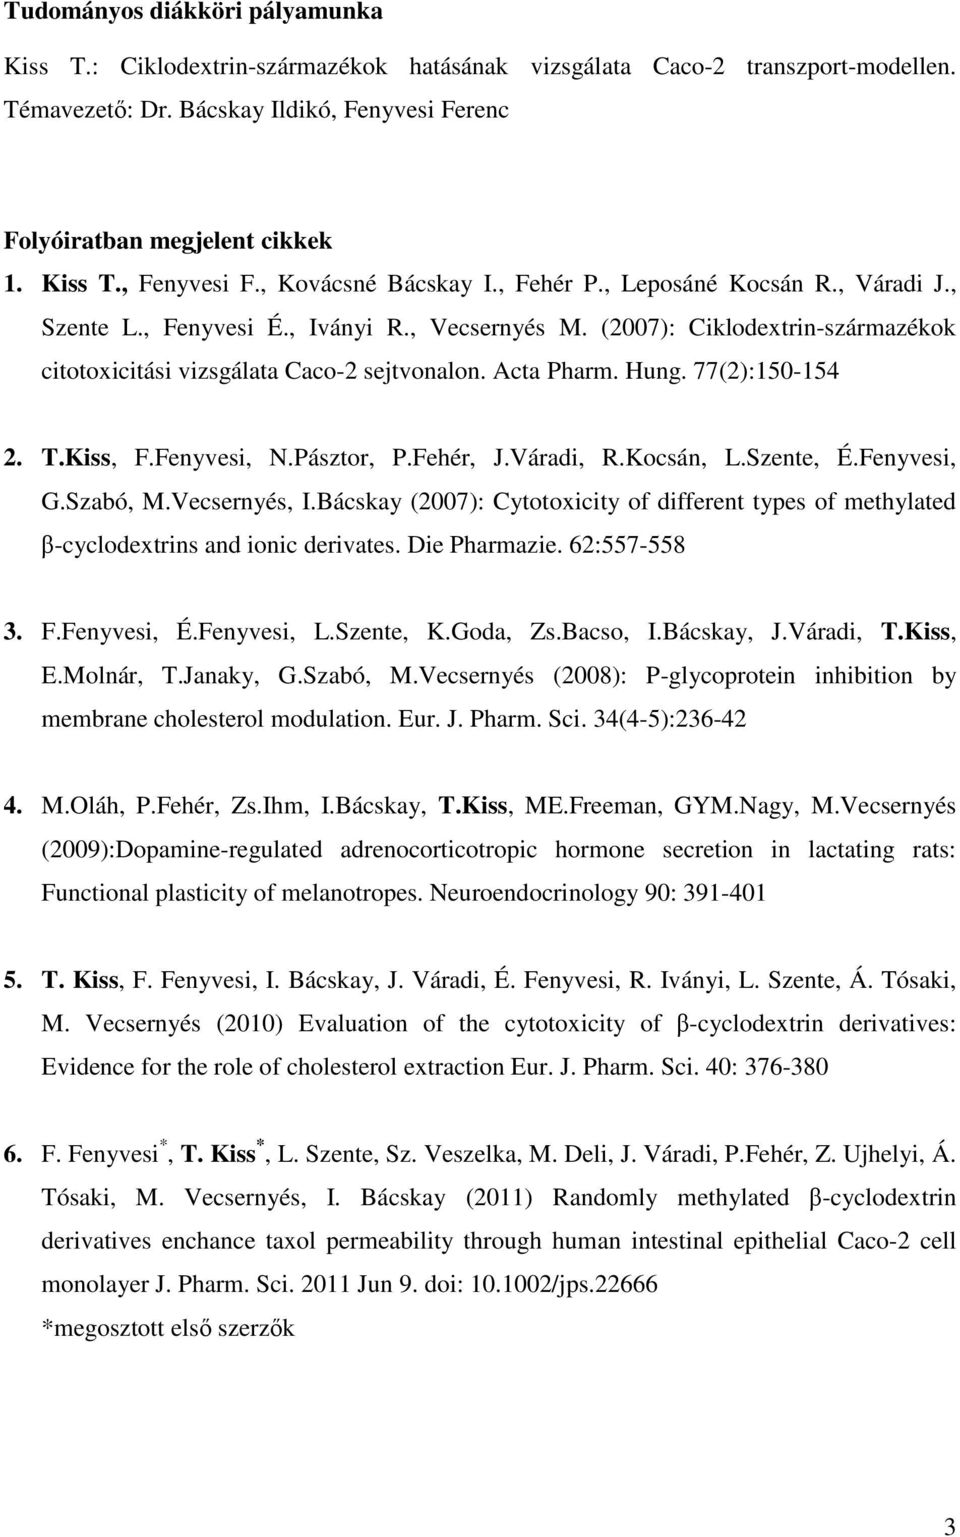 (2007): Ciklodextrin-származékok citotoxicitási vizsgálata Caco-2 sejtvonalon. Acta Pharm. Hung. 77(2):150-154 2. T.Kiss, F.Fenyvesi, N.Pásztor, P.Fehér, J.Váradi, R.Kocsán, L.Szente, É.Fenyvesi, G.